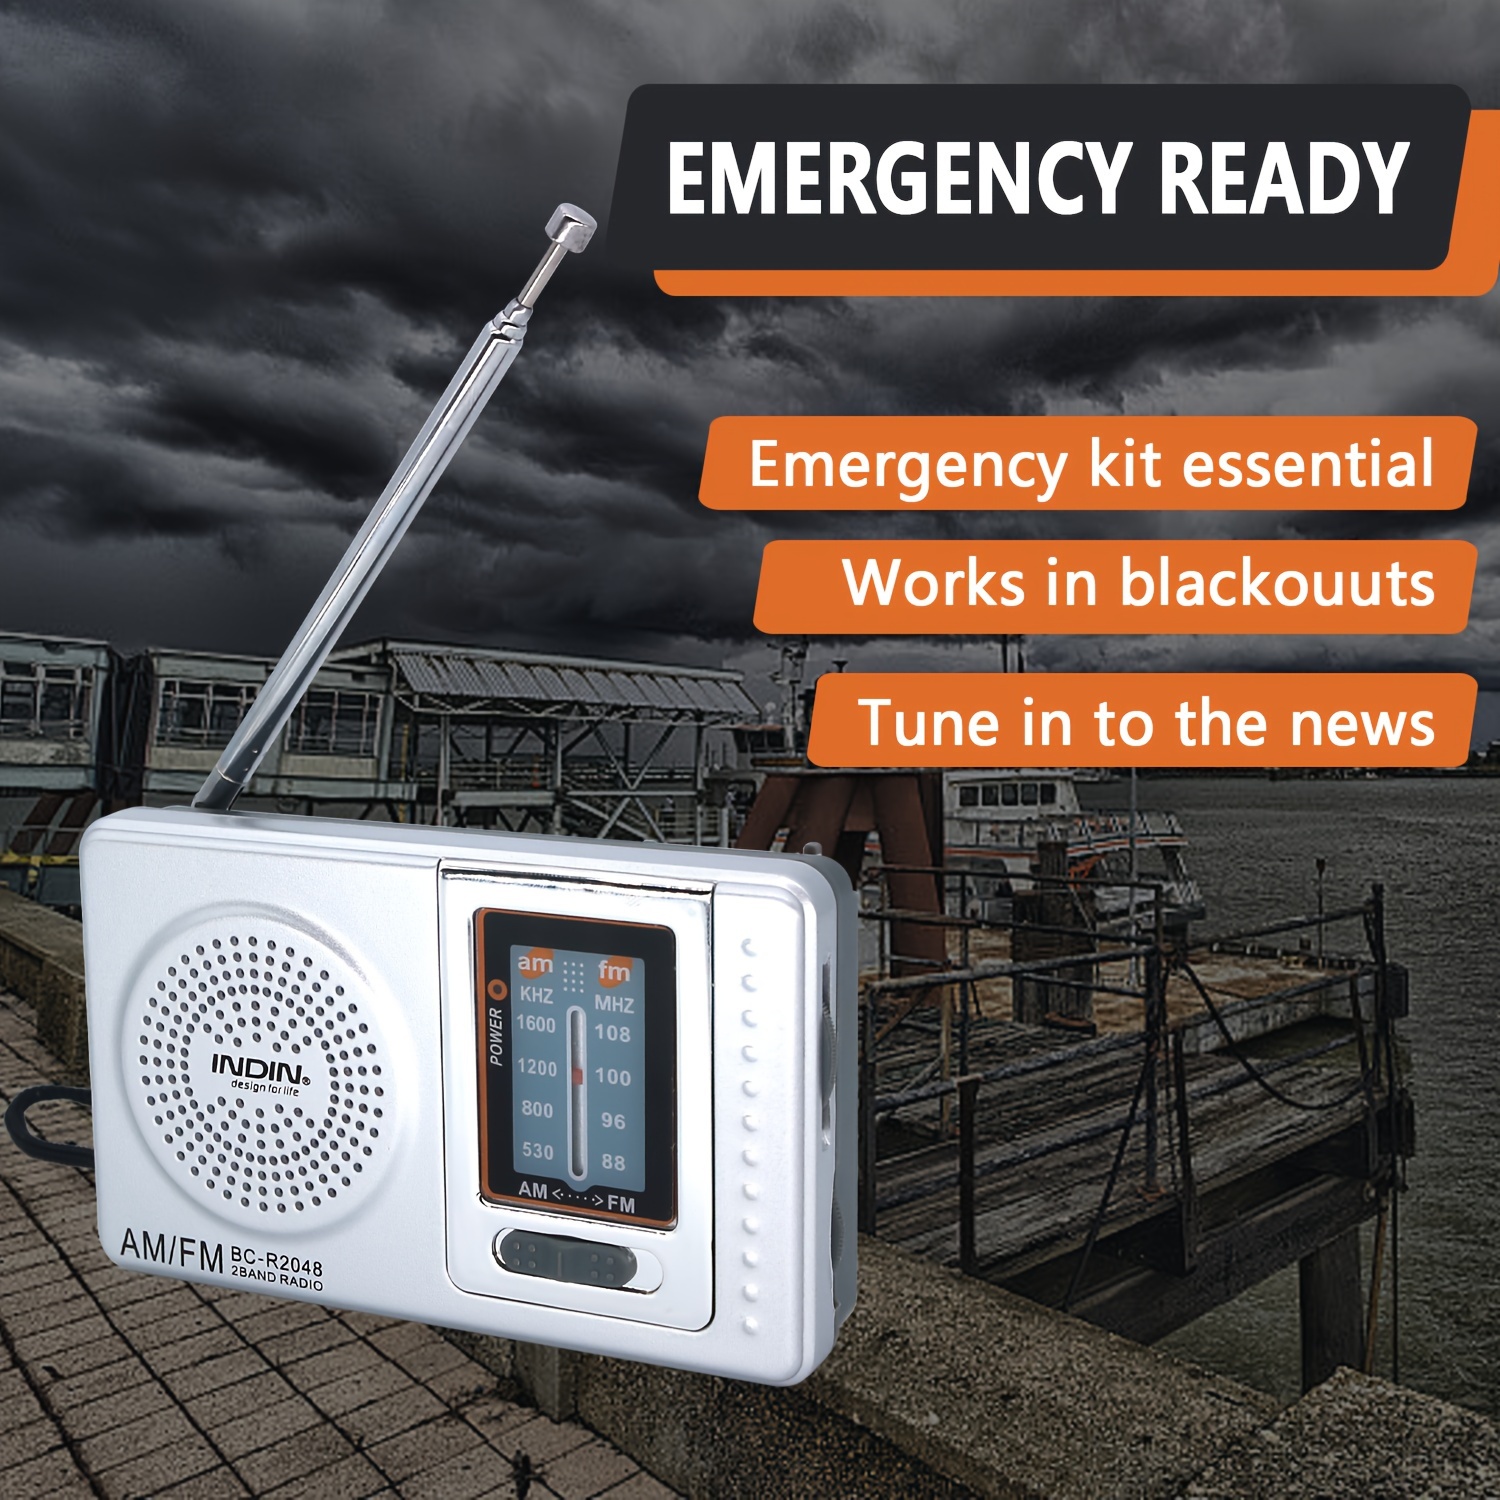 Auto NOAA Radio meteorológica de emergencia solar con manivela de mano  funciona con pilas, radio de onda corta AM FM portátil y radio despertador